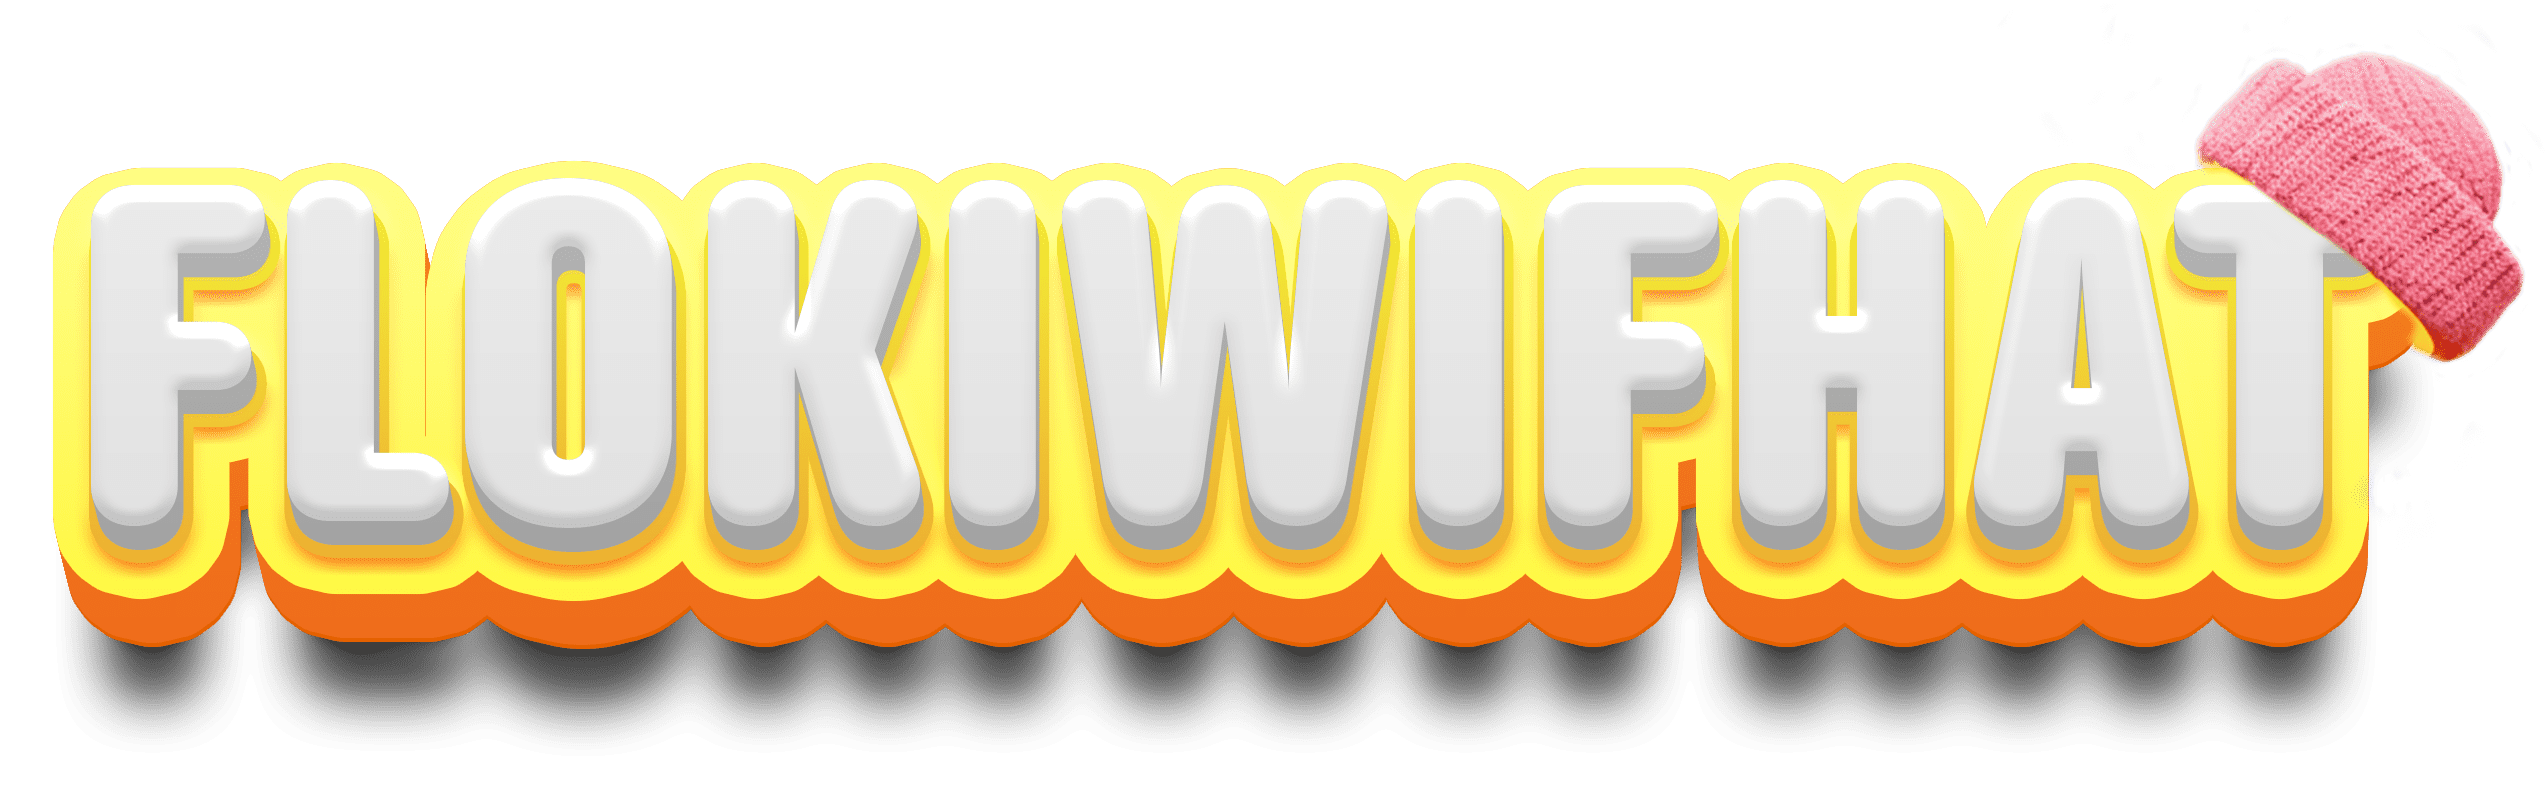 FLOKIWIFHAT logo